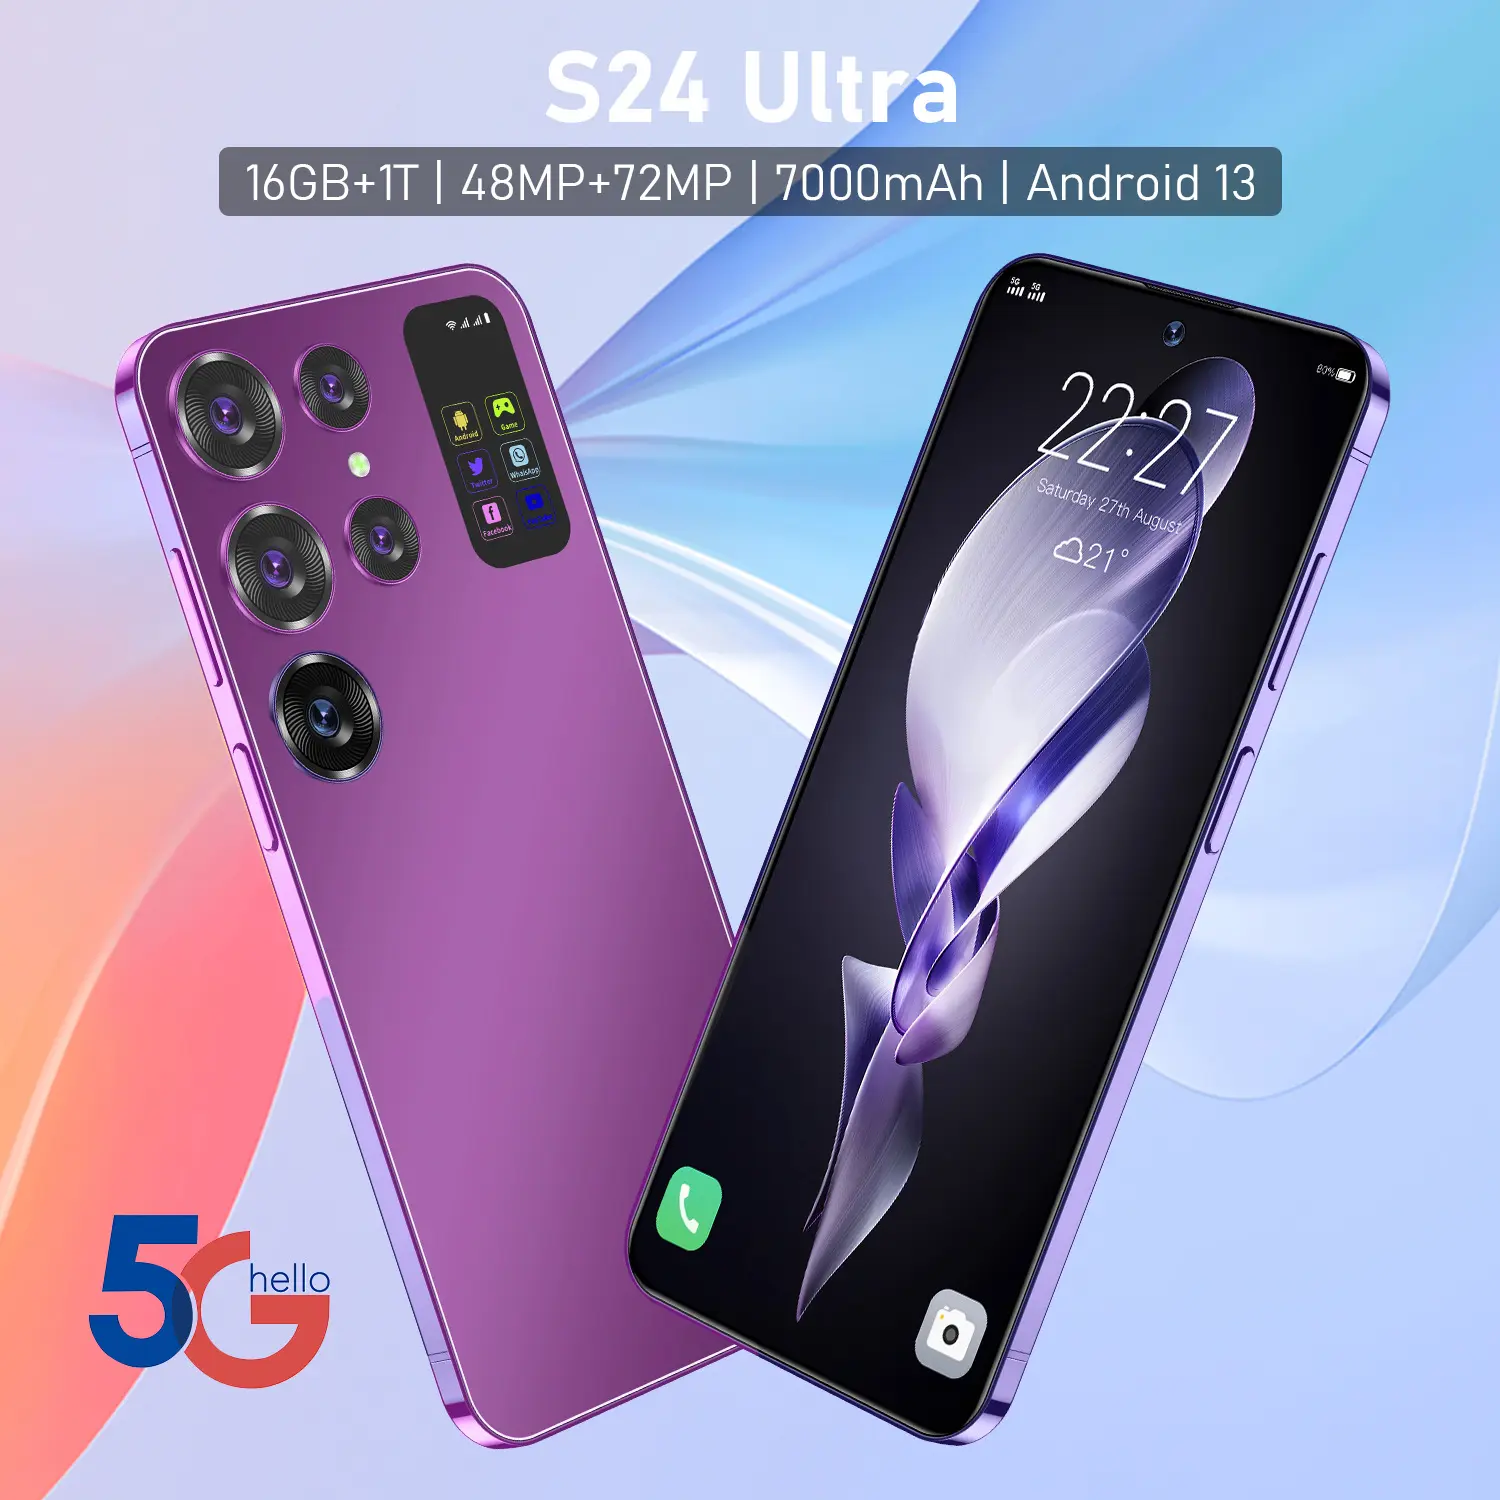 S24 Ultra cellulare drop nave vendita calda nuovo originale business phone miglior prezzo di fabbrica dual sim 3g 4g 5g smartphone